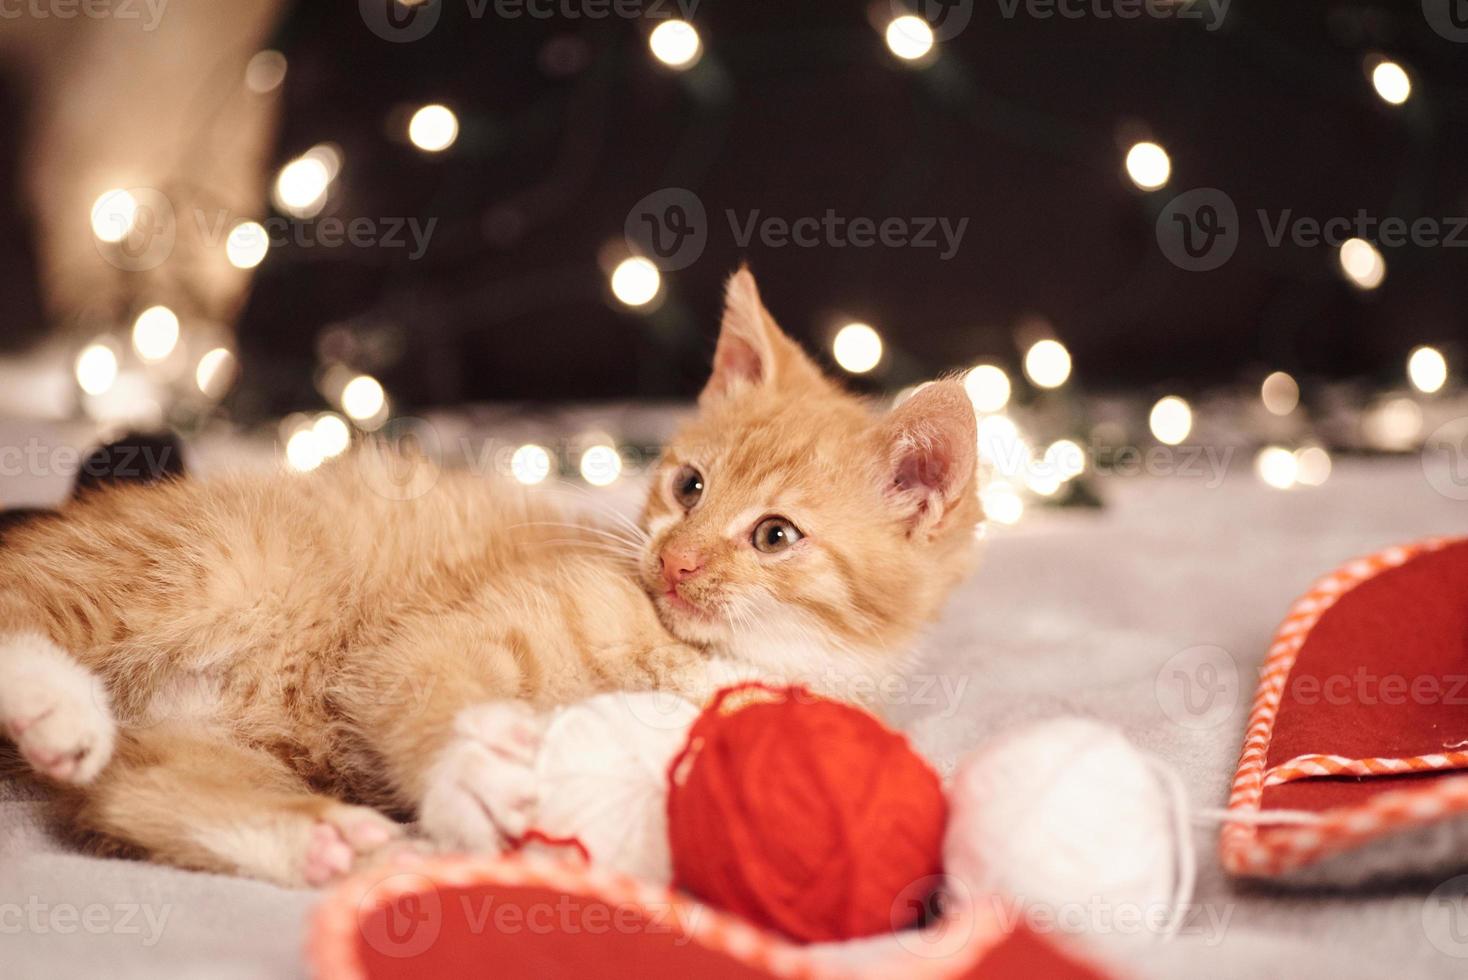 foto di natale con un simpatico gatto zenzero di luci colorate sullo sfondo